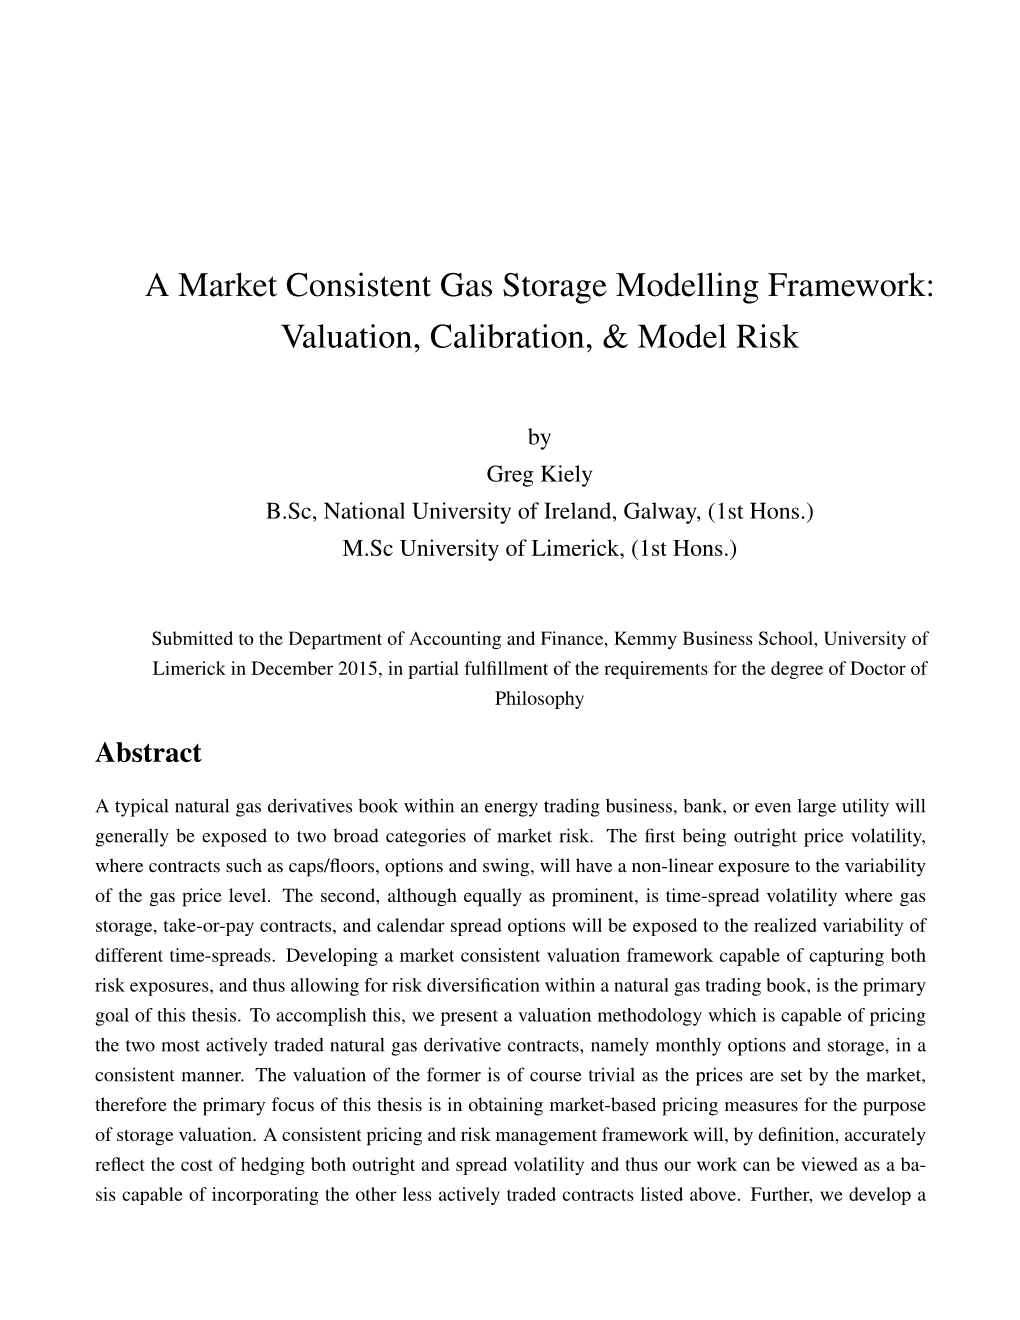 A Market Consistent Gas Storage Modelling Framework: Valuation, Calibration, & Model Risk